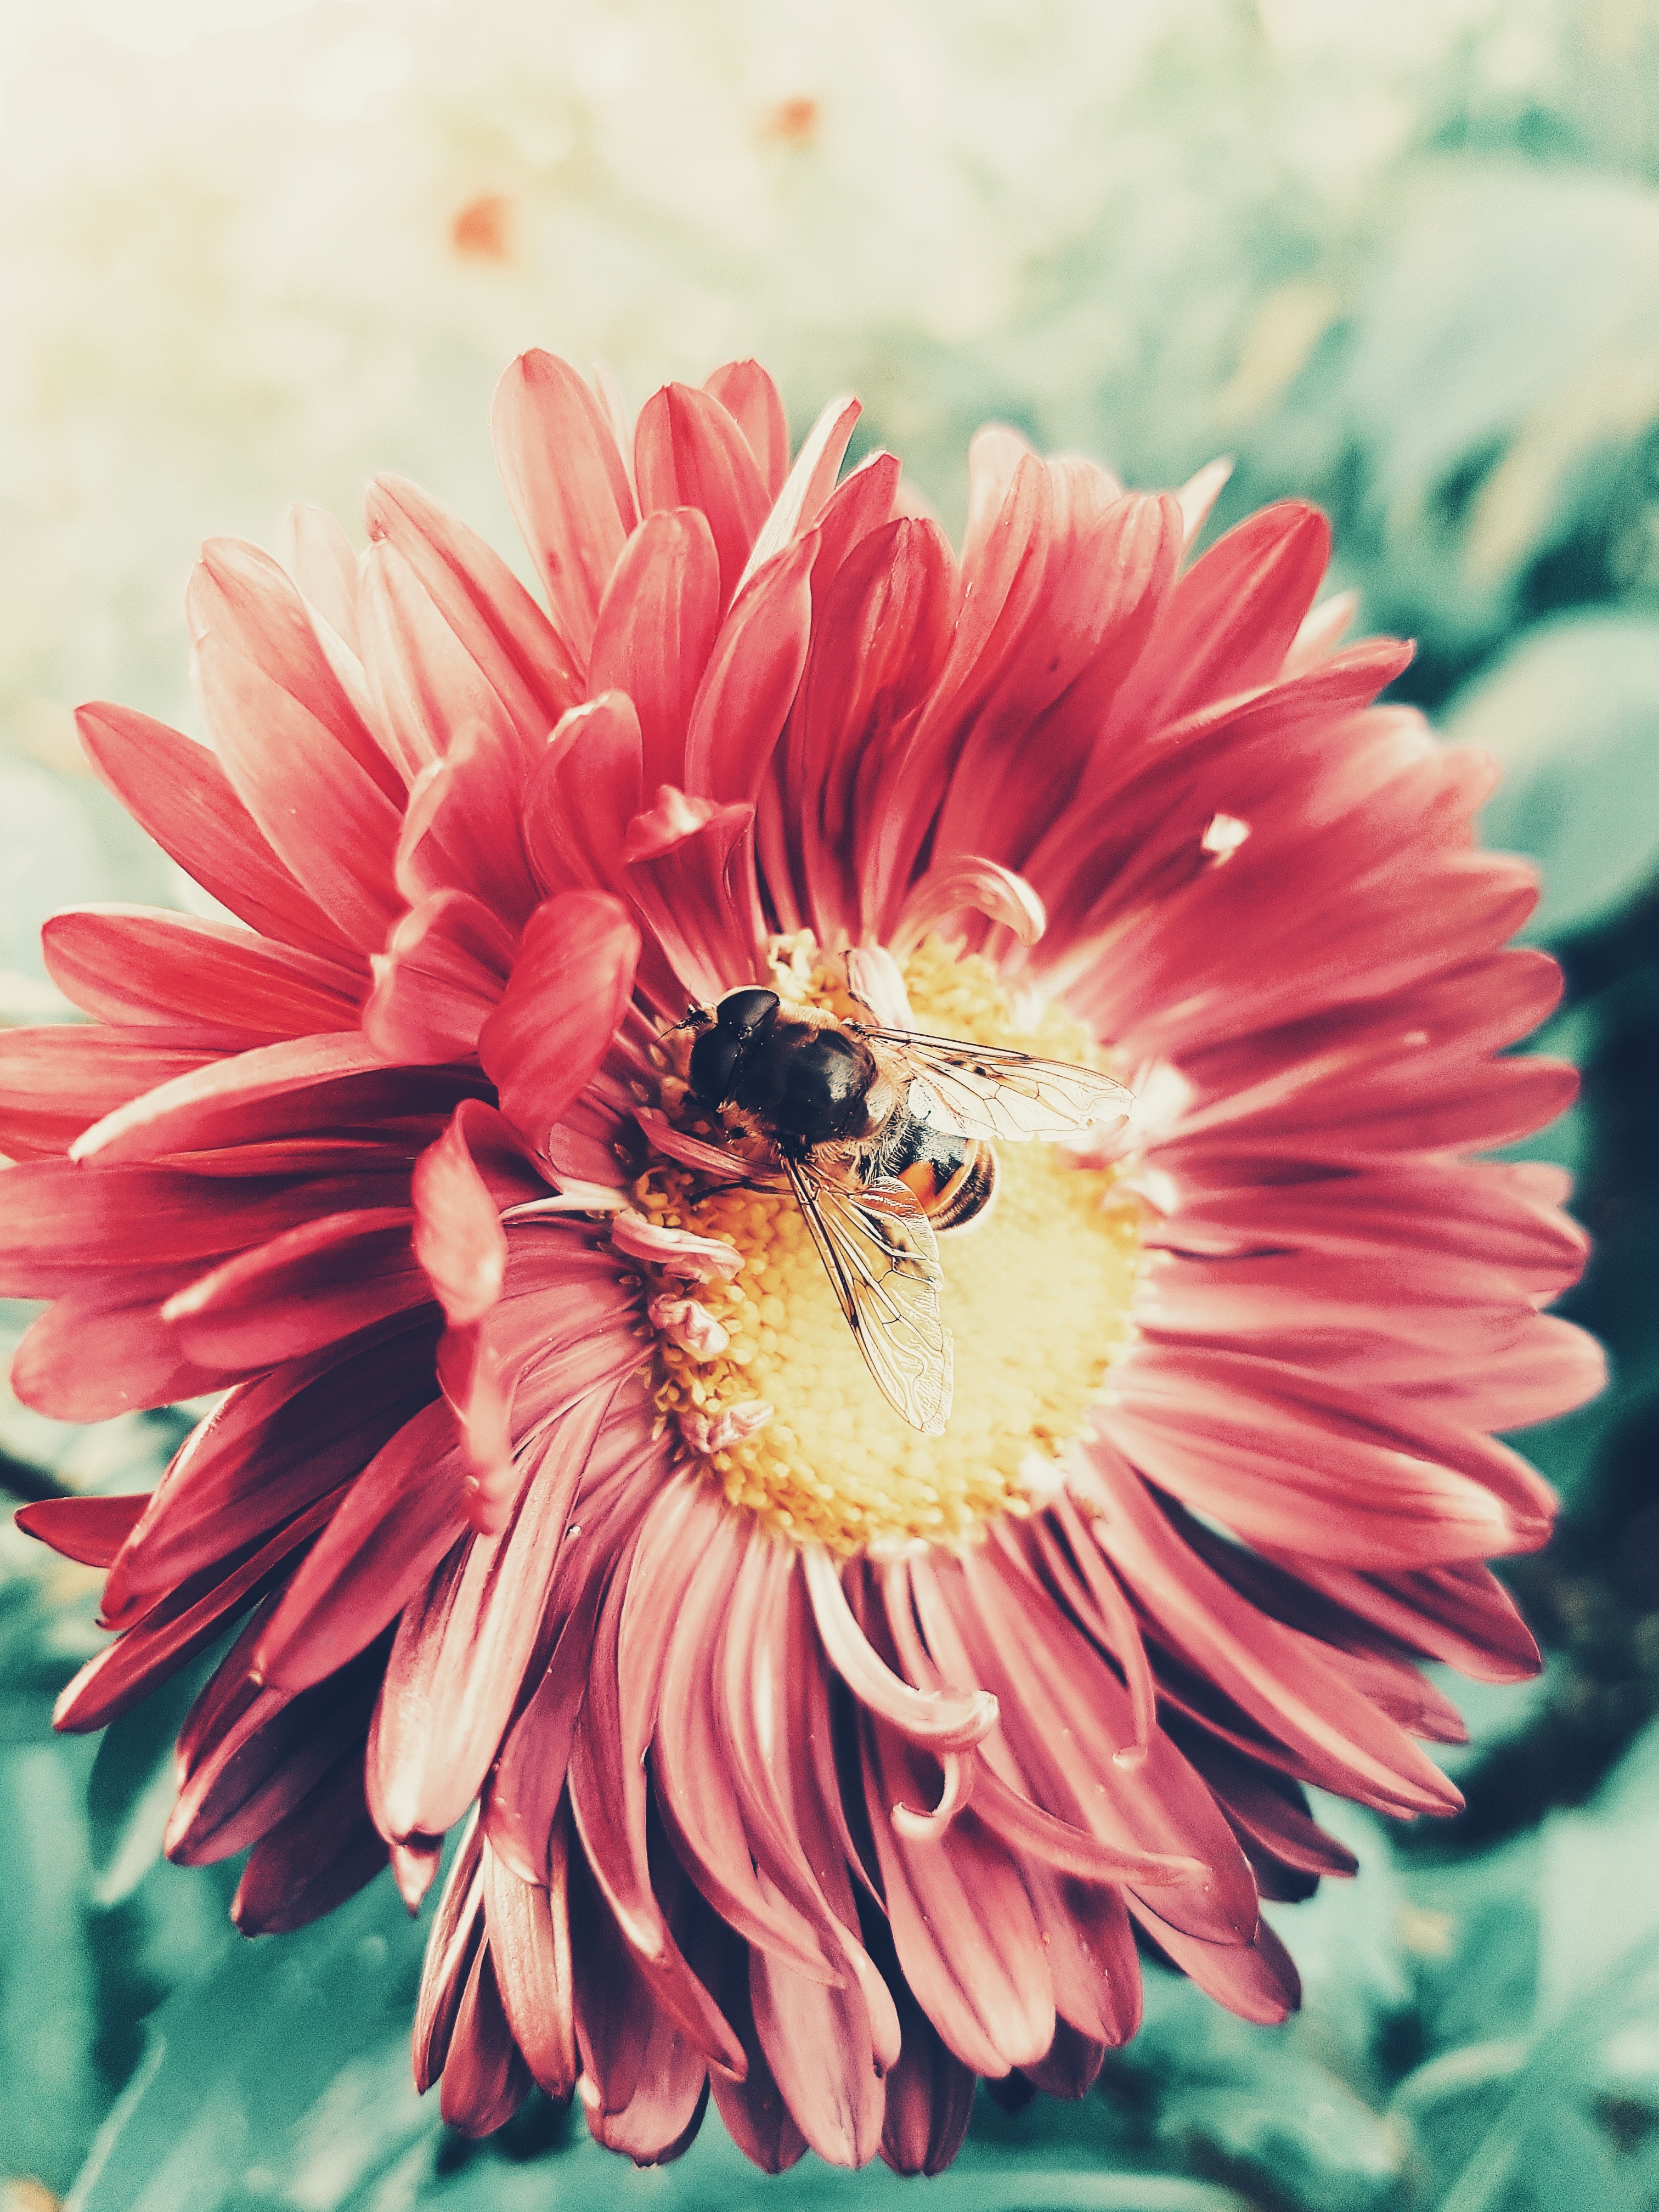 102687 免費下載壁紙 昆虫, 花卉, 蜜蜂, 花, 宏, 花瓣, 授粉 屏保和圖片